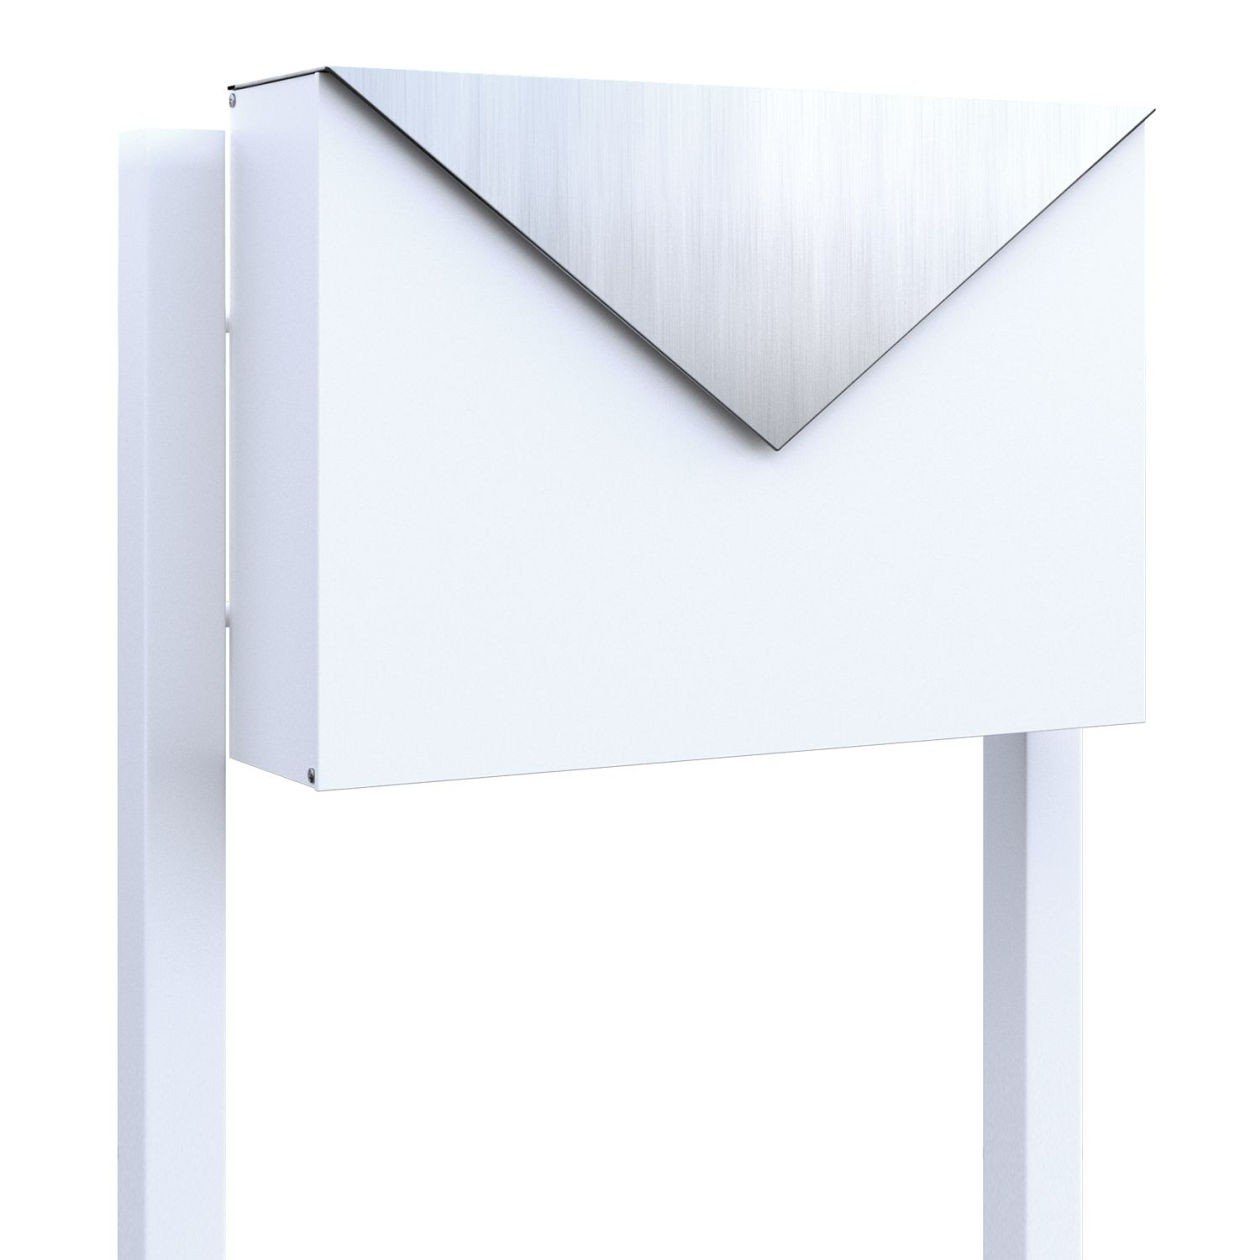 Bravios Briefkasten Standbriefkasten Letter Weiß mit Edelstahlklappe